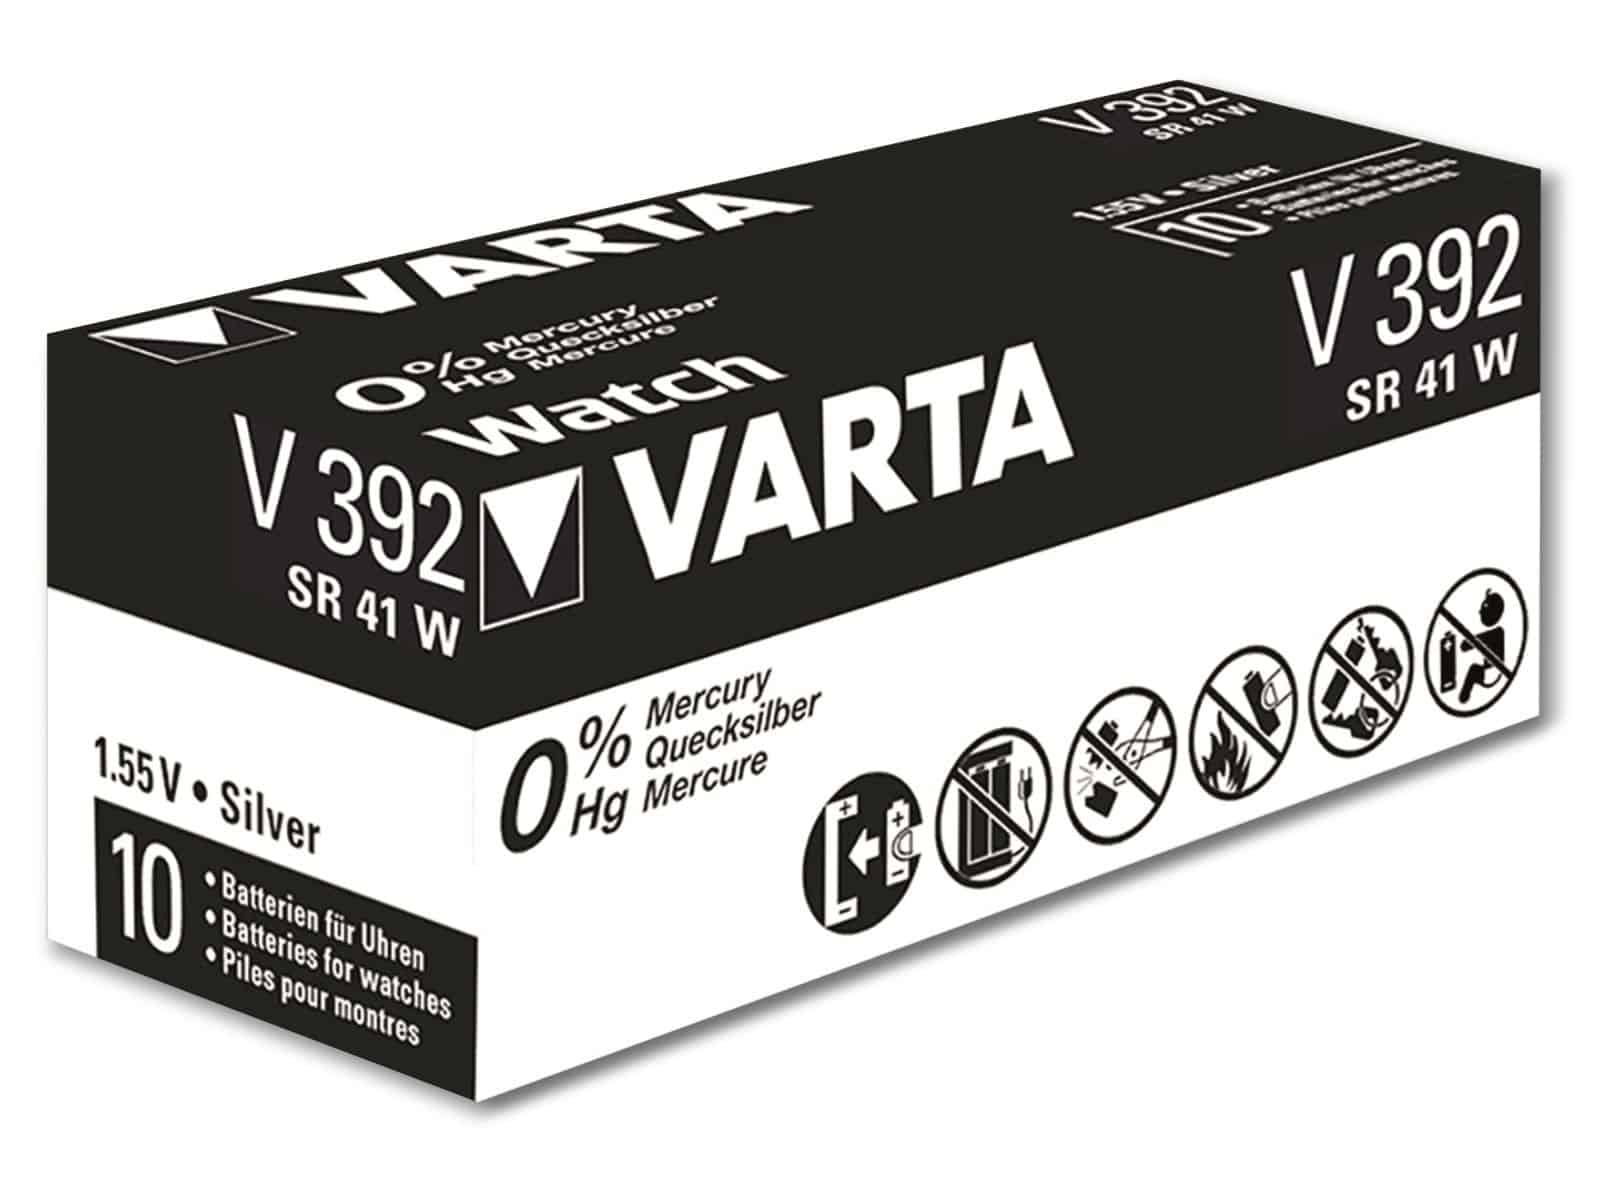 Silver 1.55V, Knopfzelle 10 Silberoxid Oxide, Stück Knopfzelle VARTA SR41, 392